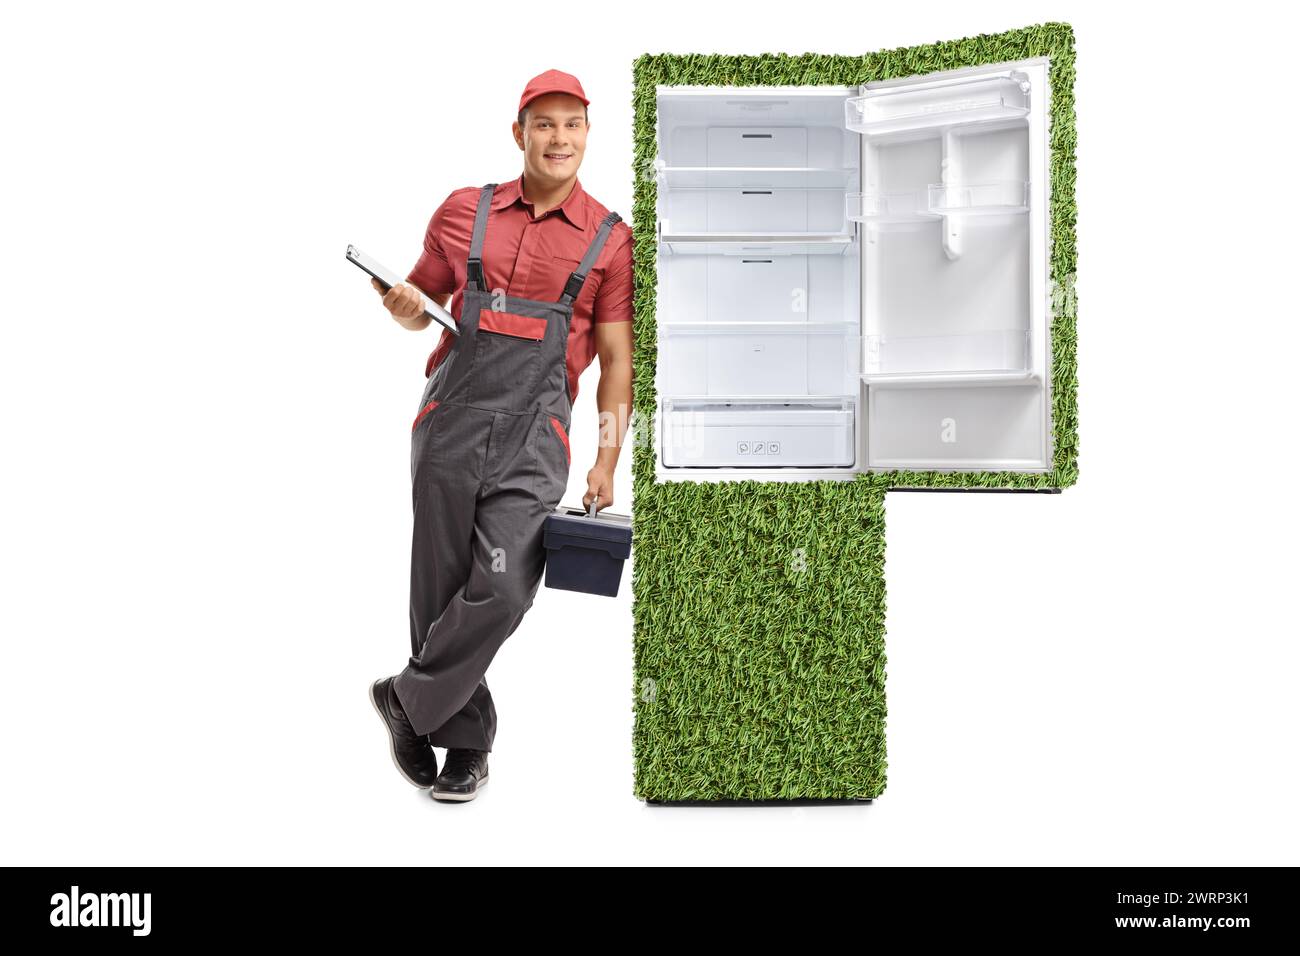 Réparateur avec une planchette à pince et une boîte à outils appuyée contre un réfrigérateur vert durable isolé sur fond blanc Banque D'Images